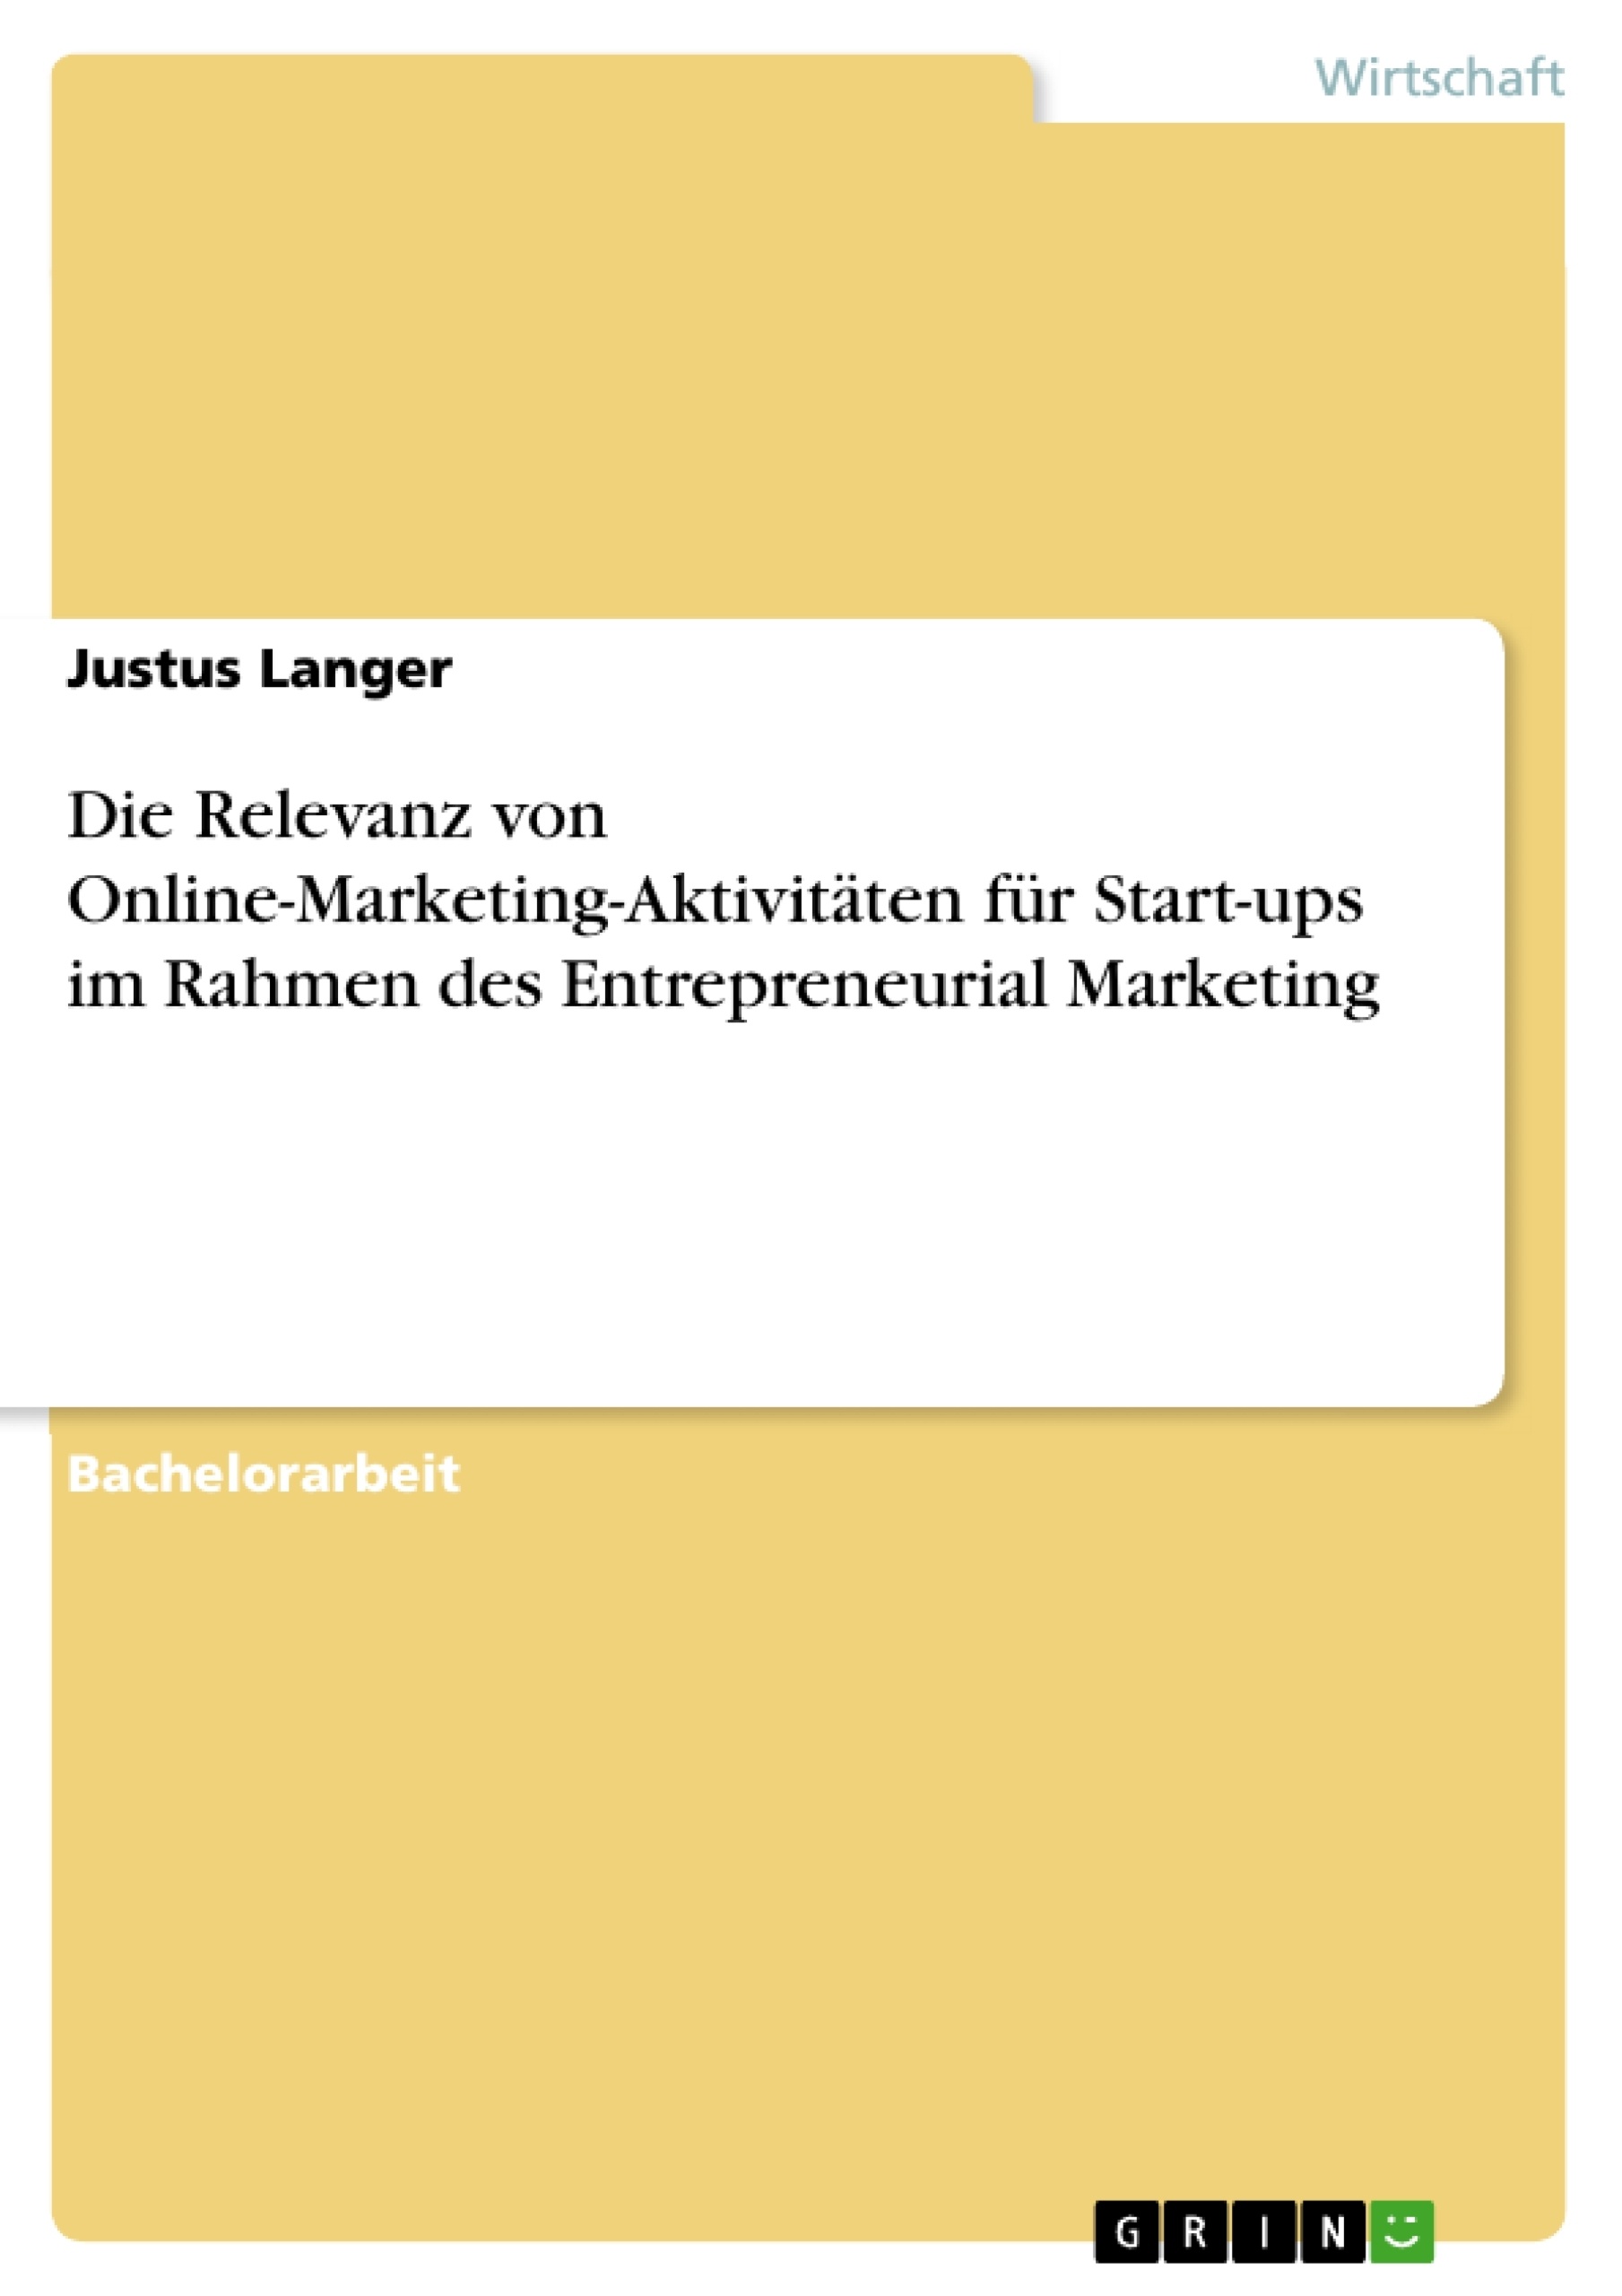 Título: Die Relevanz von Online-Marketing-Aktivitäten für Start-ups im Rahmen des Entrepreneurial Marketing